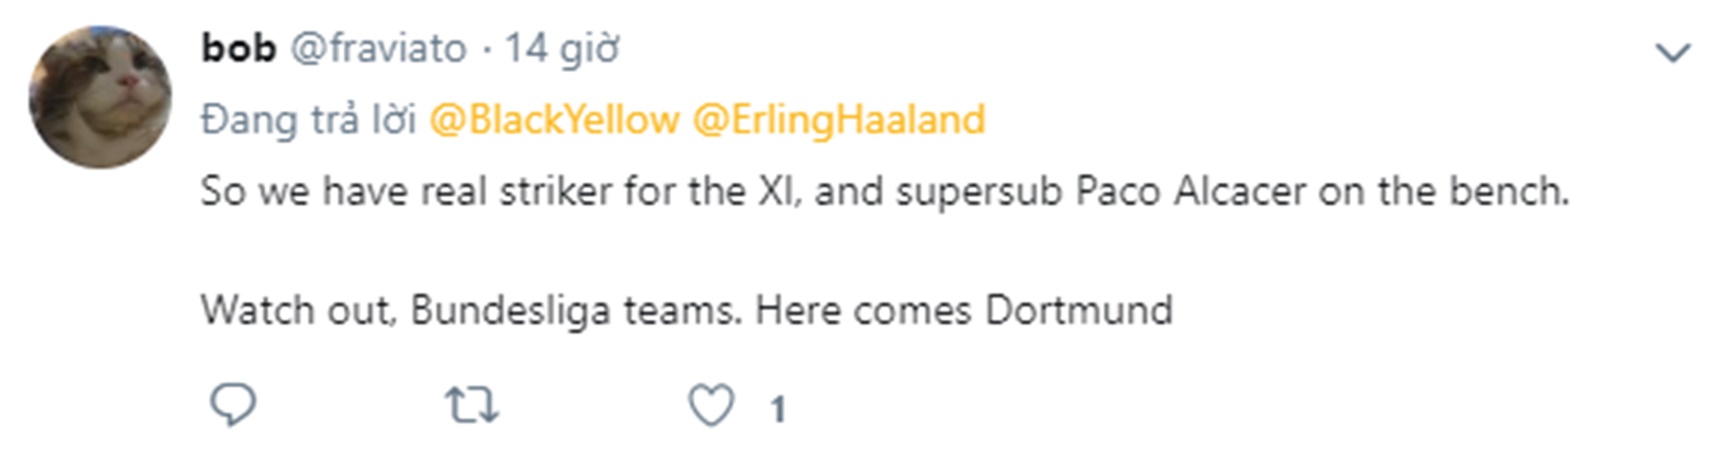 NHM Dortmund nói gì khi chiêu mộ Haaland - Bóng Đá